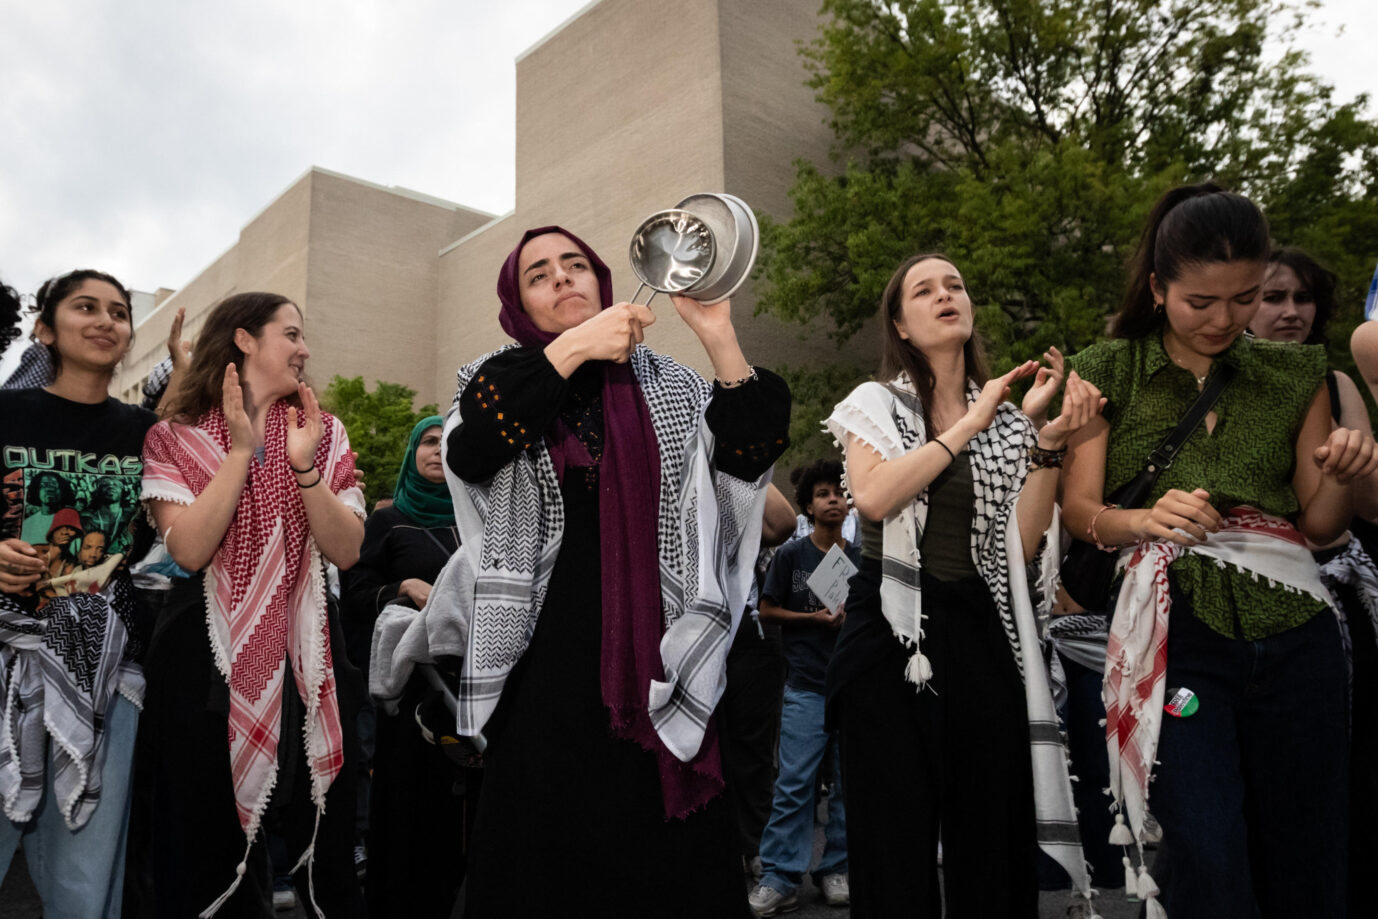 Pro-palästinensische Studenten demonstrieren in Washington: Das kann für die US-Demokraten zum Wahlkampfproblem werden.